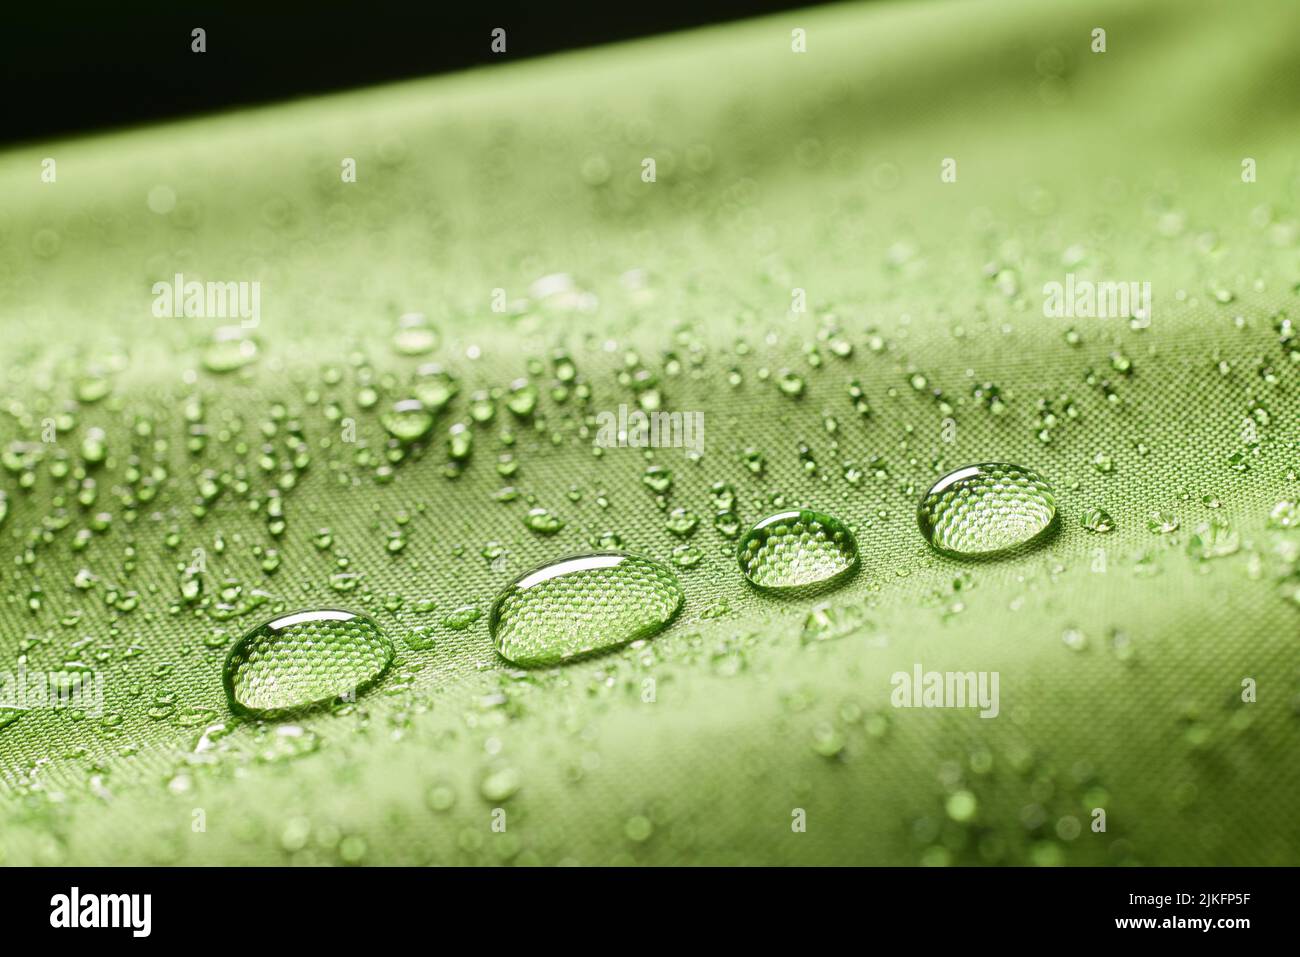 Gros plan abondance de gouttes d'eau claire transparentes sur un tissu vert humide texturé imprégné d'eau sur un arrière-plan flou dans la pièce lumineuse Banque D'Images